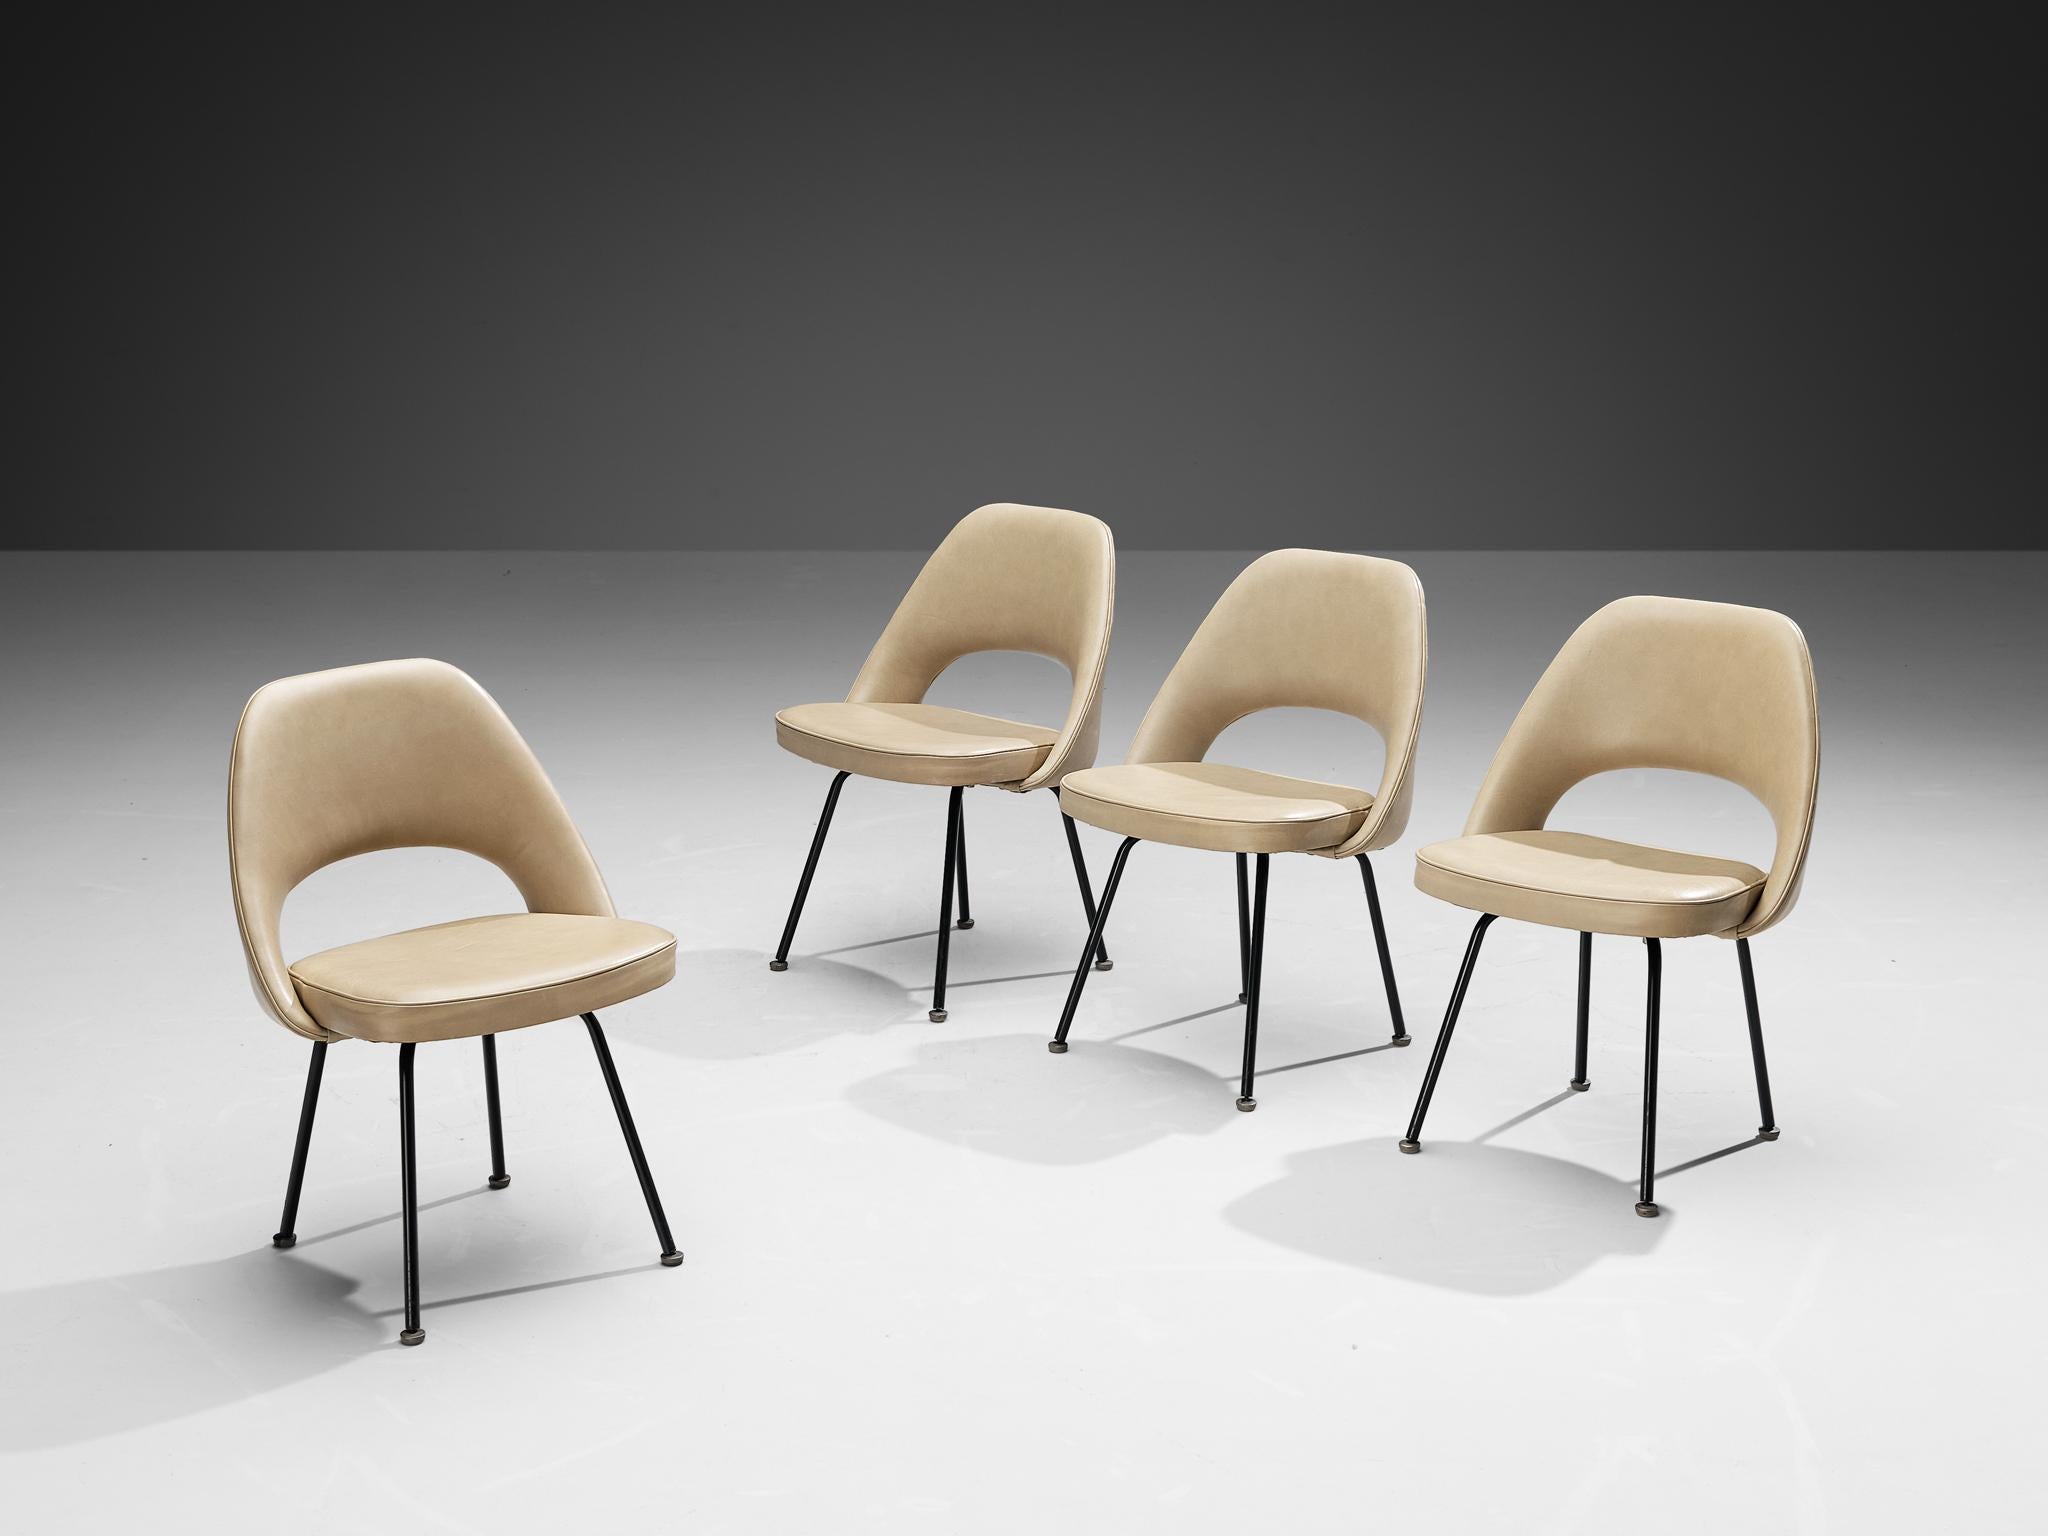 Eero Saarinen pour Knoll, ensemble de quatre chaises de salle à manger, modèle '72', acier laqué, cuir, États-Unis, design 1948, production ultérieure

Ensemble de quatre chaises de forme organique conçues par Eero Saarinen. Une forme fluide et